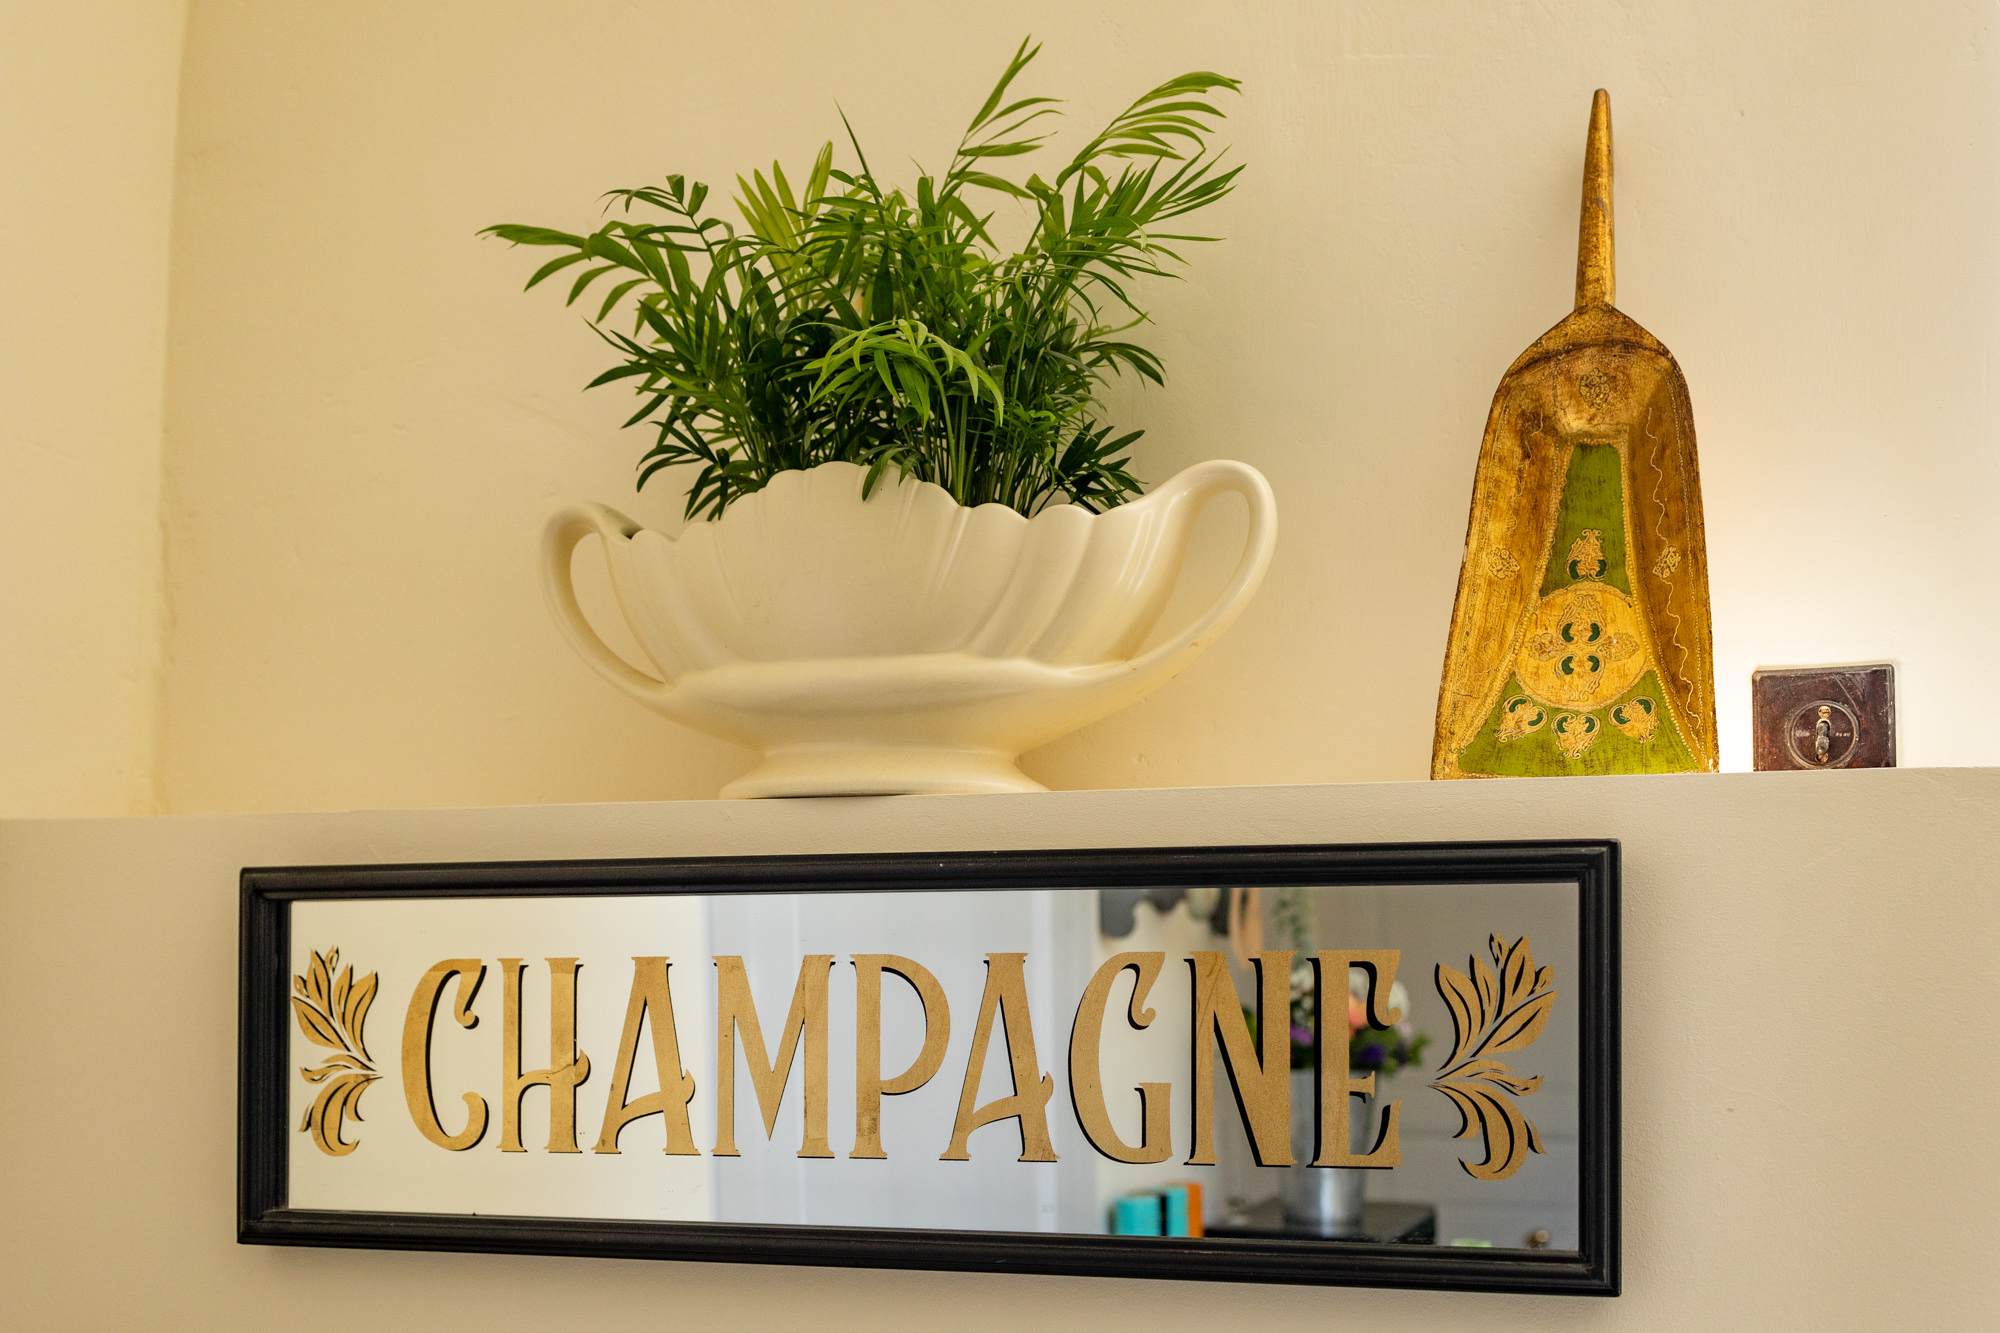 Maison Champagne - Location vacances luxe piscine et champagne à Condom- ©Gascogne Collection